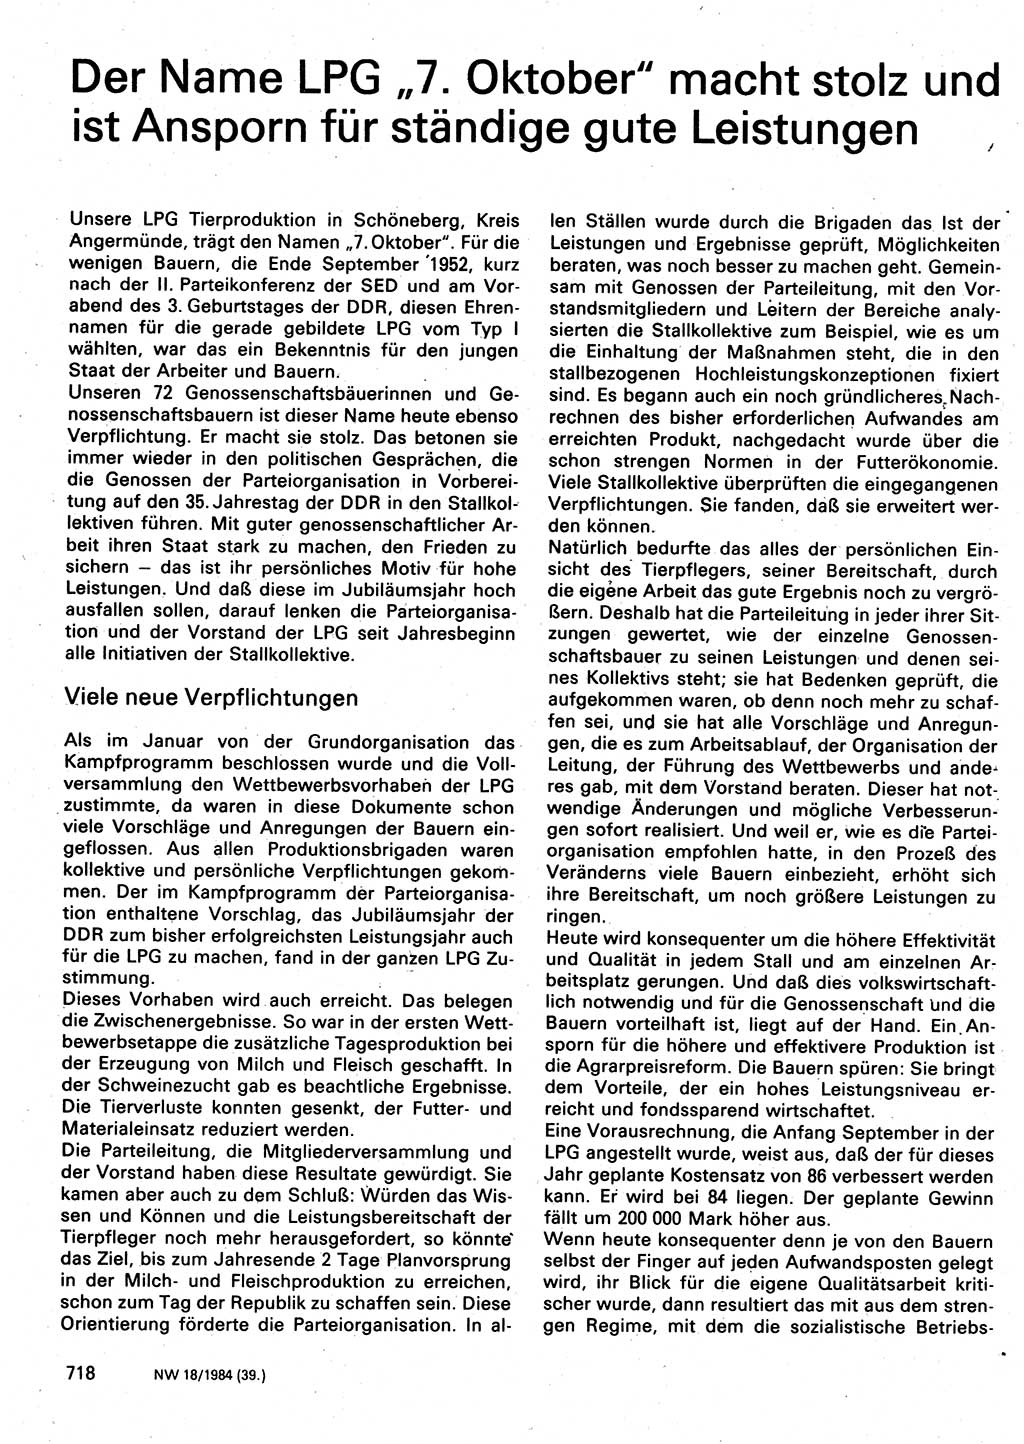 Neuer Weg (NW), Organ des Zentralkomitees (ZK) der SED (Sozialistische Einheitspartei Deutschlands) für Fragen des Parteilebens, 39. Jahrgang [Deutsche Demokratische Republik (DDR)] 1984, Seite 718 (NW ZK SED DDR 1984, S. 718)